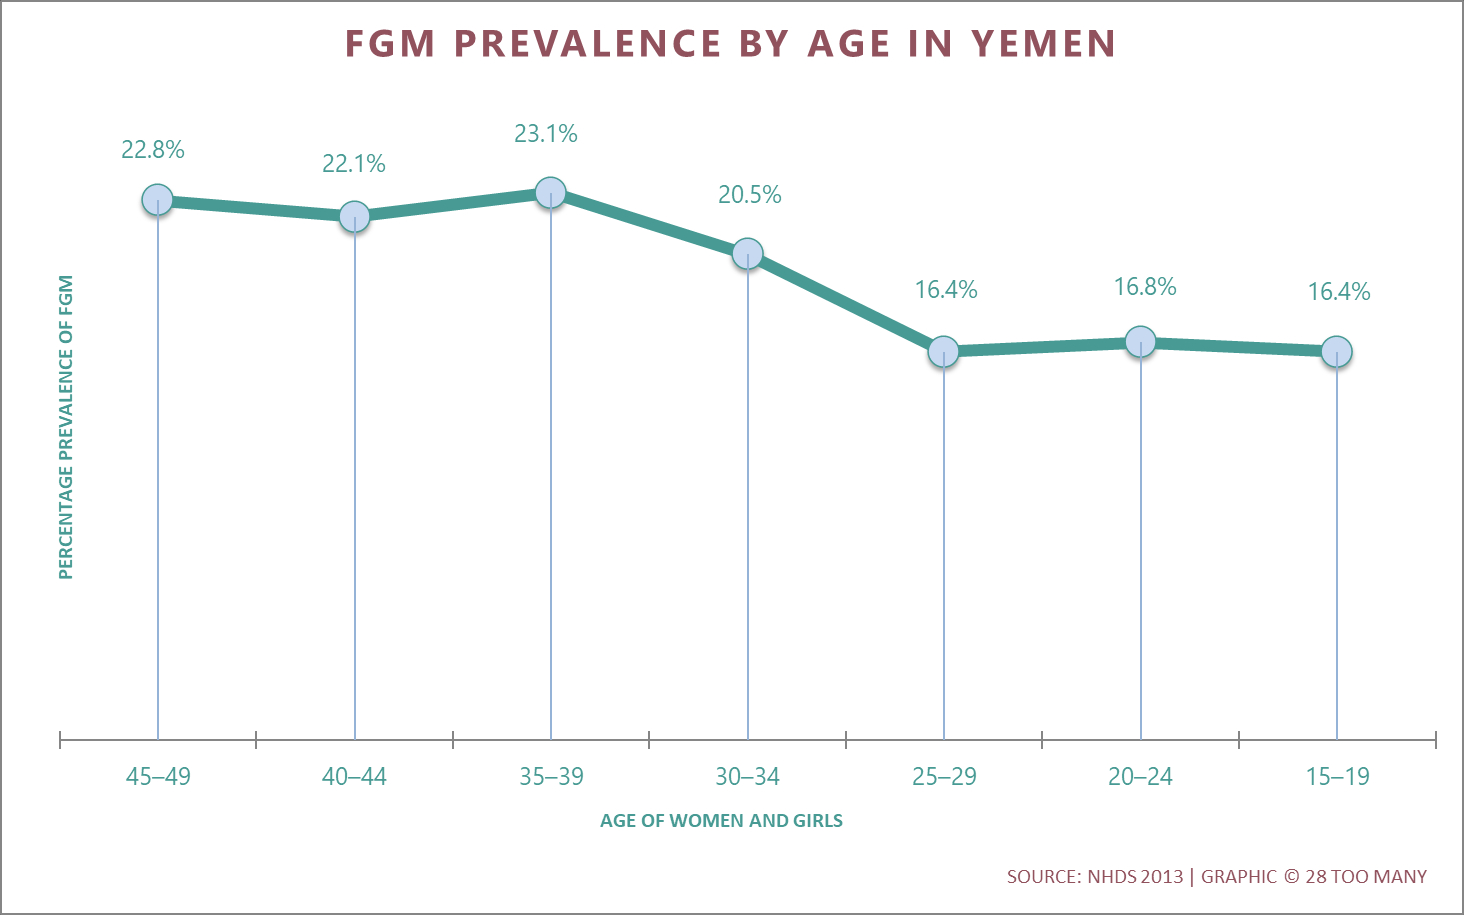 Trends in FGM/C Prevalence in Yemen